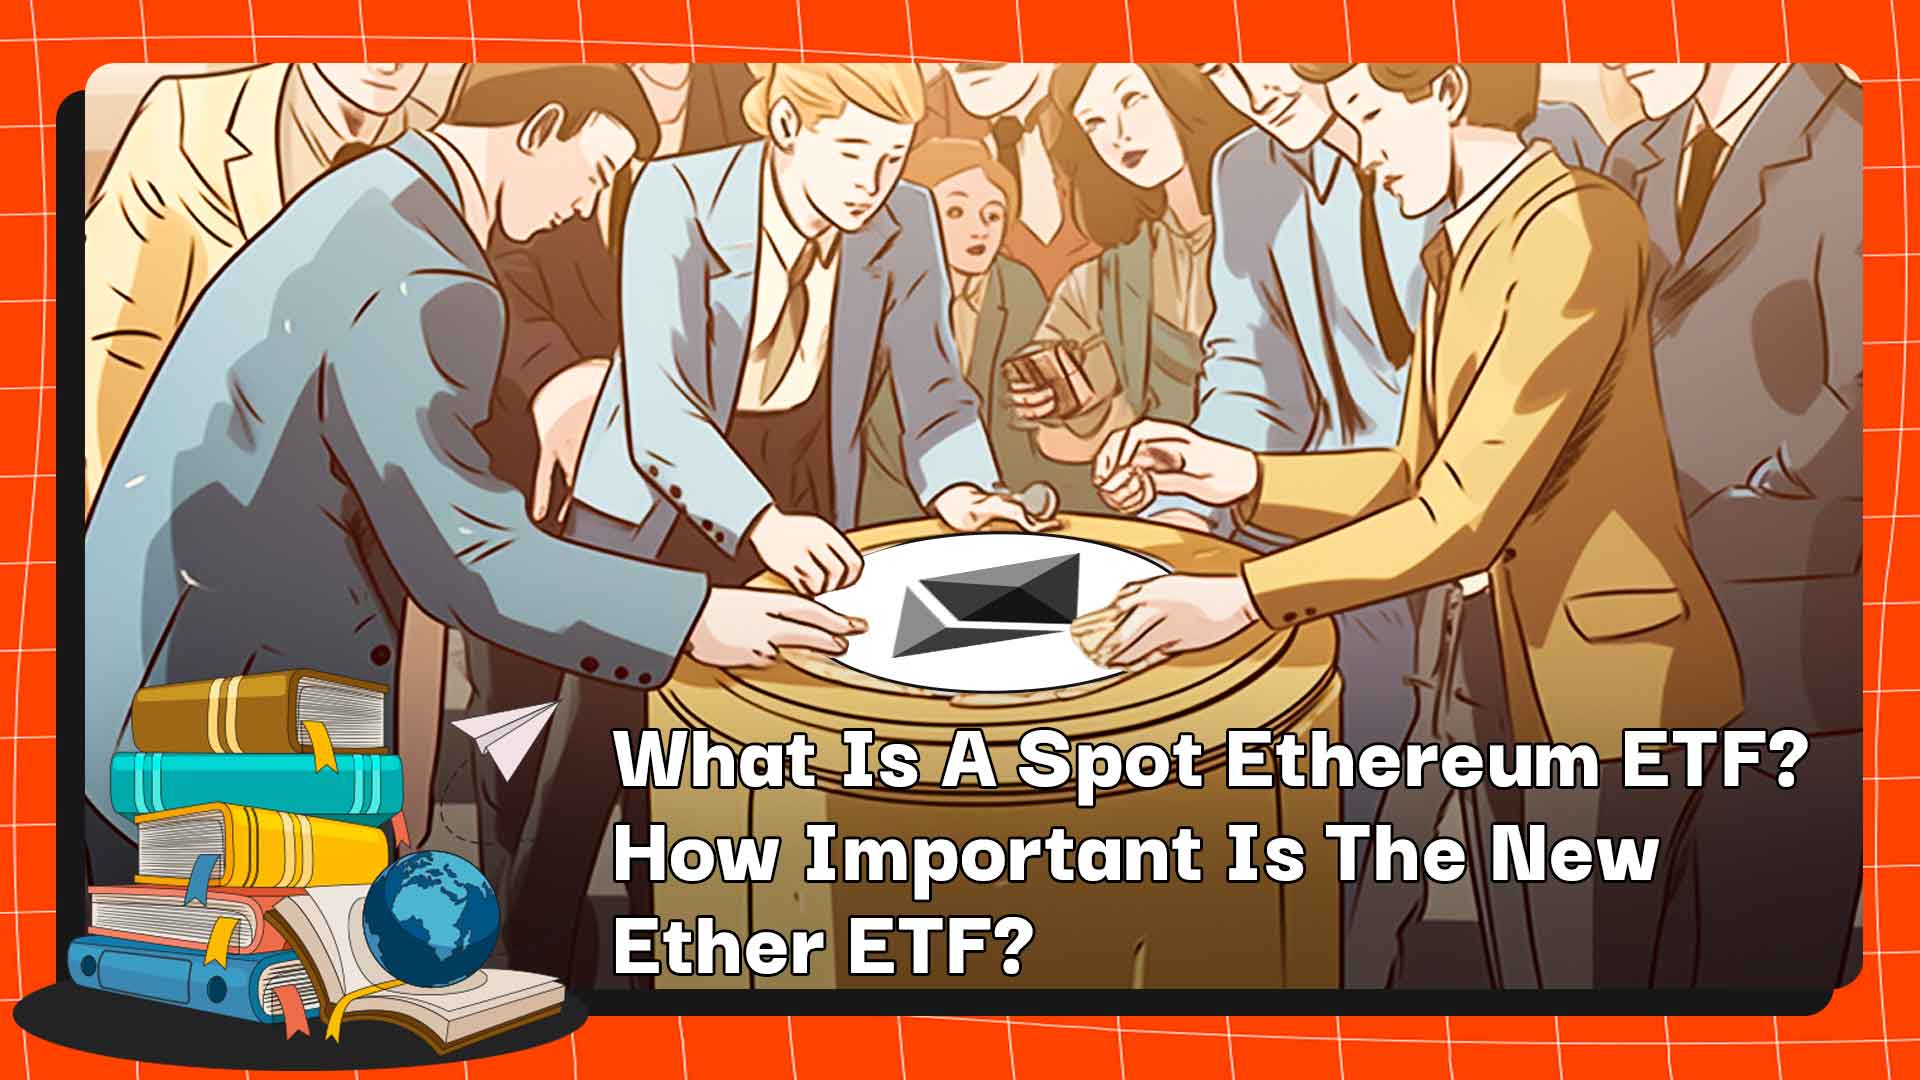 스팟 이더리움 ETF란 무엇입니까? New Ether ETF는 얼마나 중요합니까?